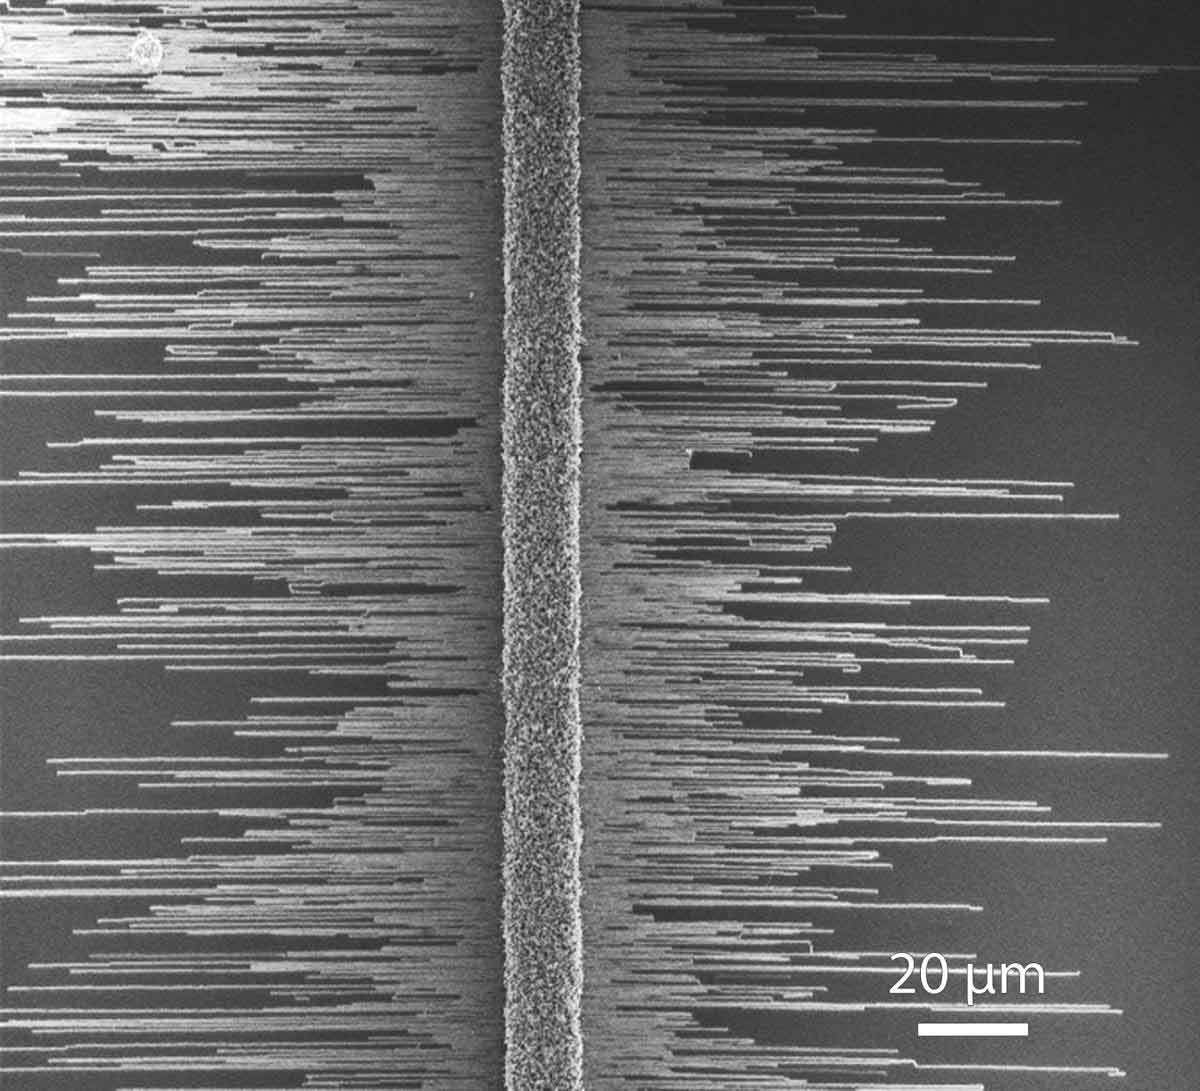 תמונה במיקרוסקופ אלקטרונים סורק של ננו-חוטים עשויים גליום-ניטריד, הגדלים במסודר על גביש ספיר